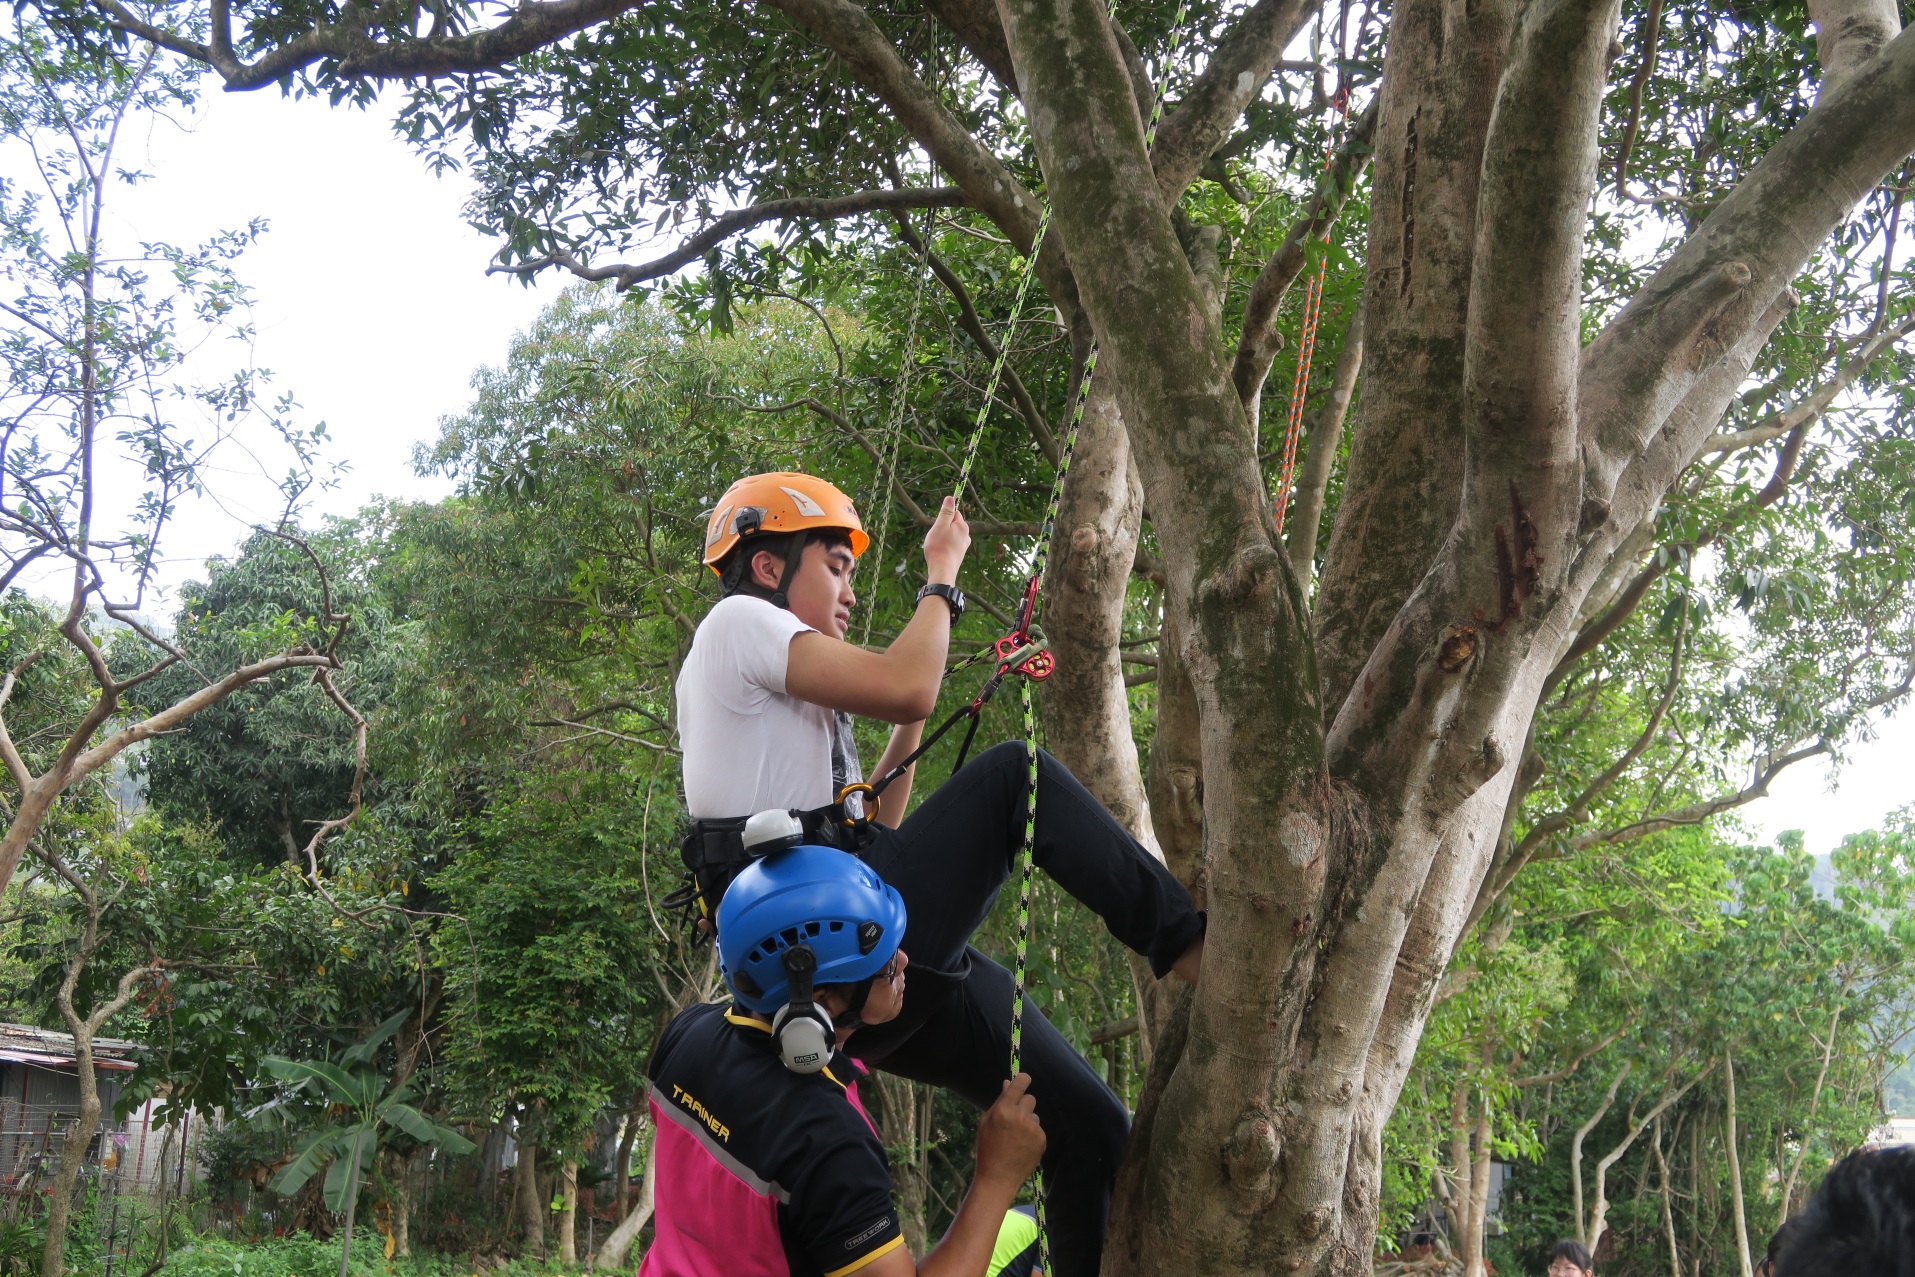 同学亲身体验树木攀爬的乐趣，也了解到攀树师需具备的特质。